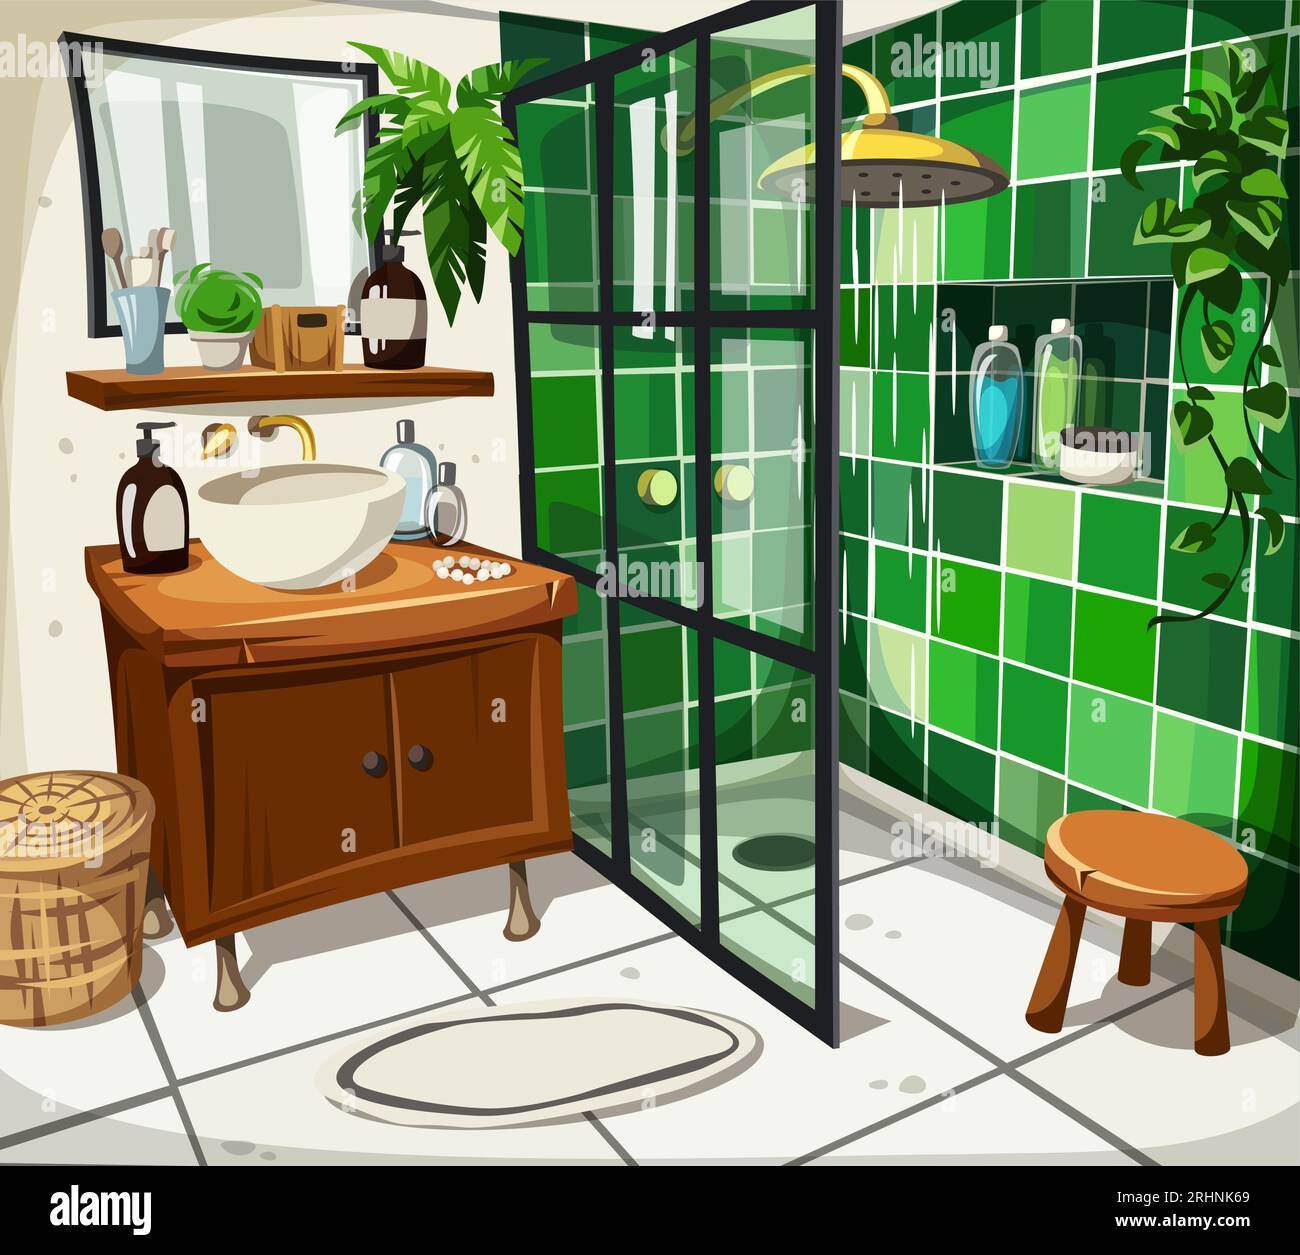 Interior del baño con azulejos verdes, ducha abierta, tocador, espejo y plantas de interior. Ilustración vectorial de dibujos animados Ilustración del Vector